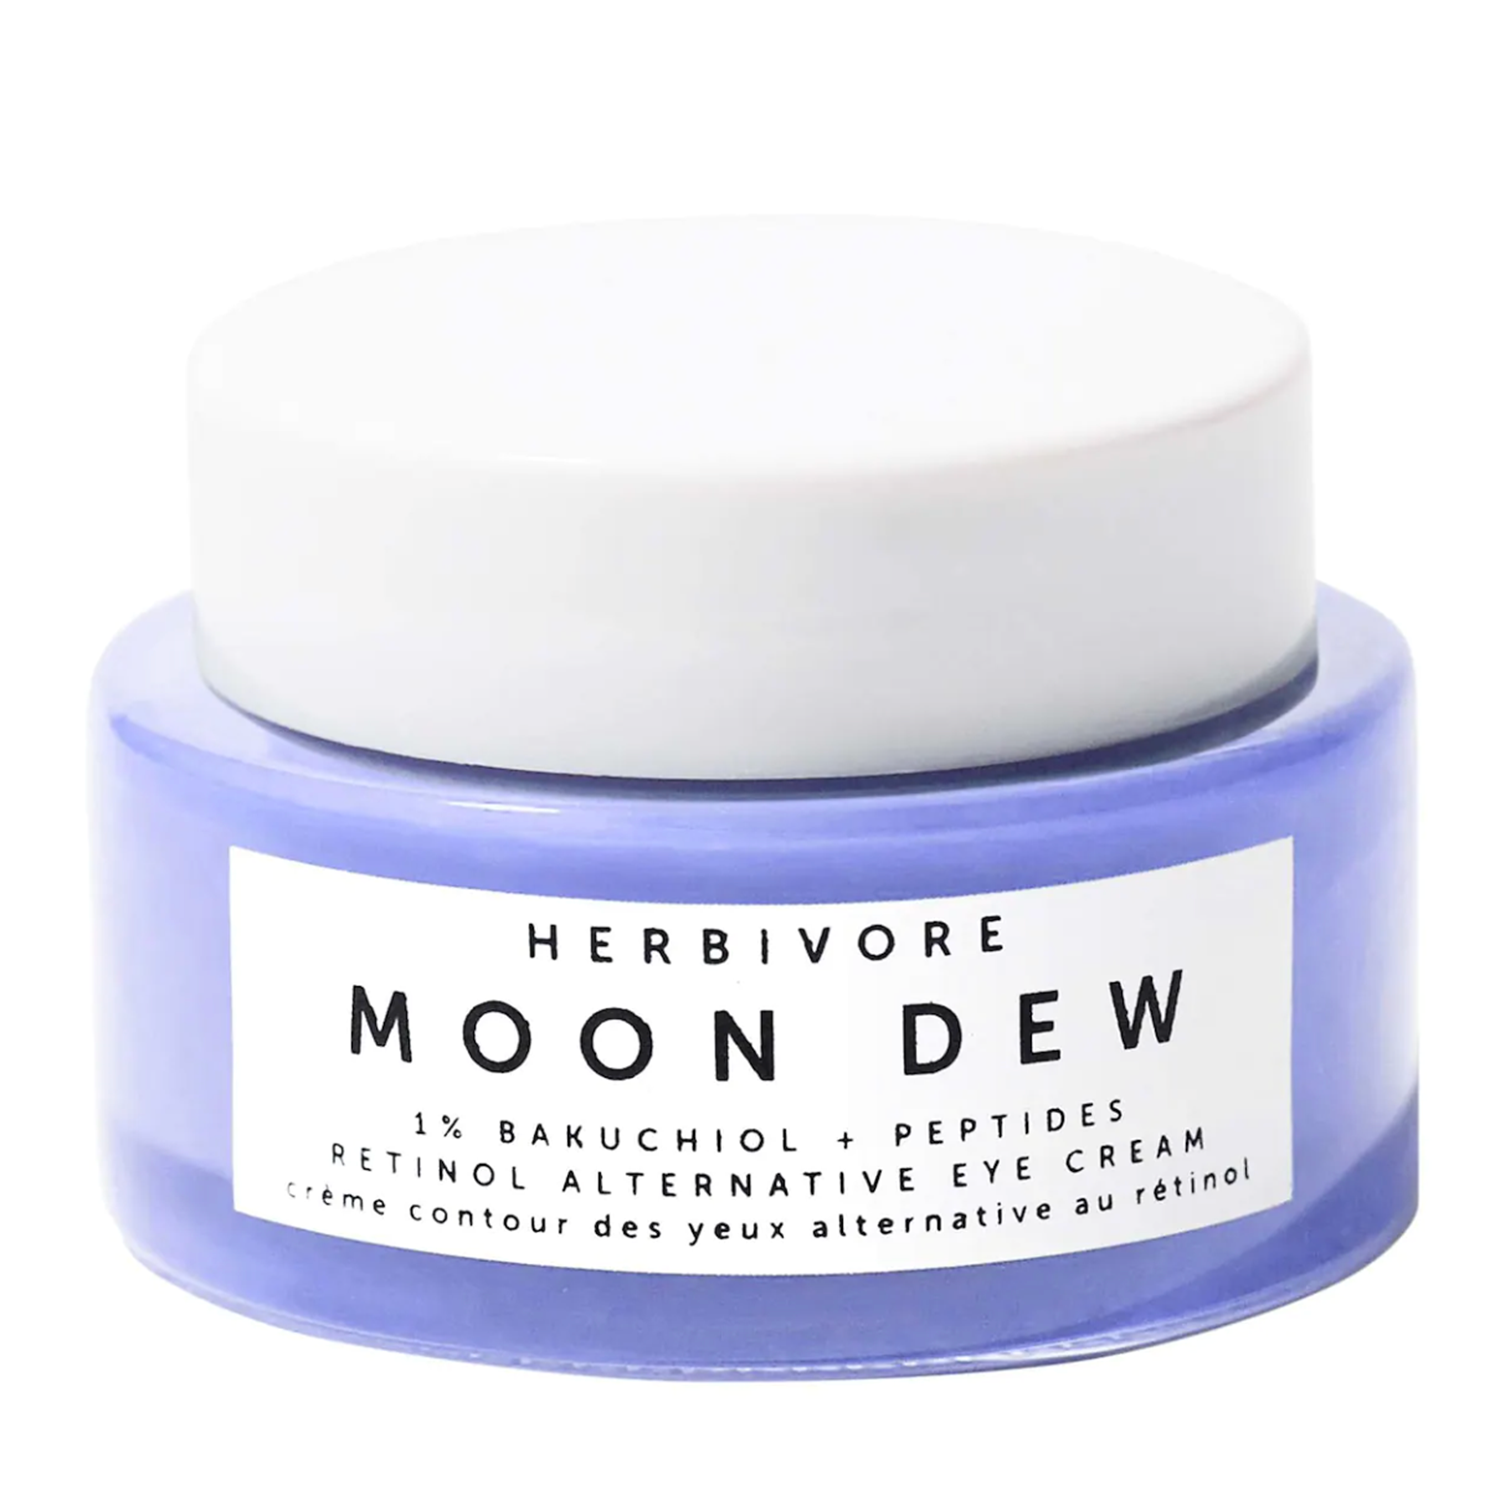 Moon Dew Retinol Alternative Eye Cream by Herbivore